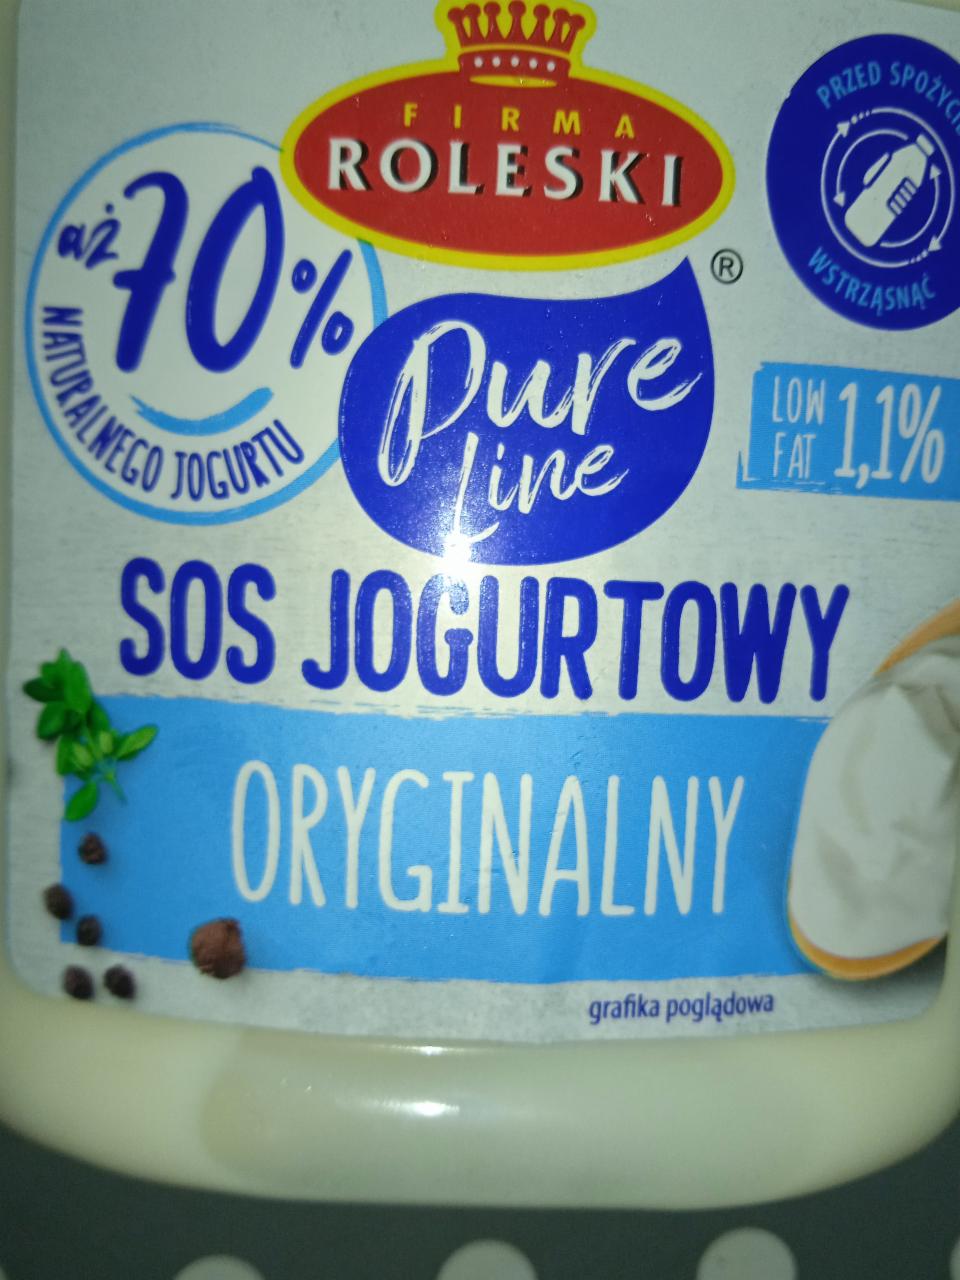 Фото - соус йогуртовый оригинальный Roleski